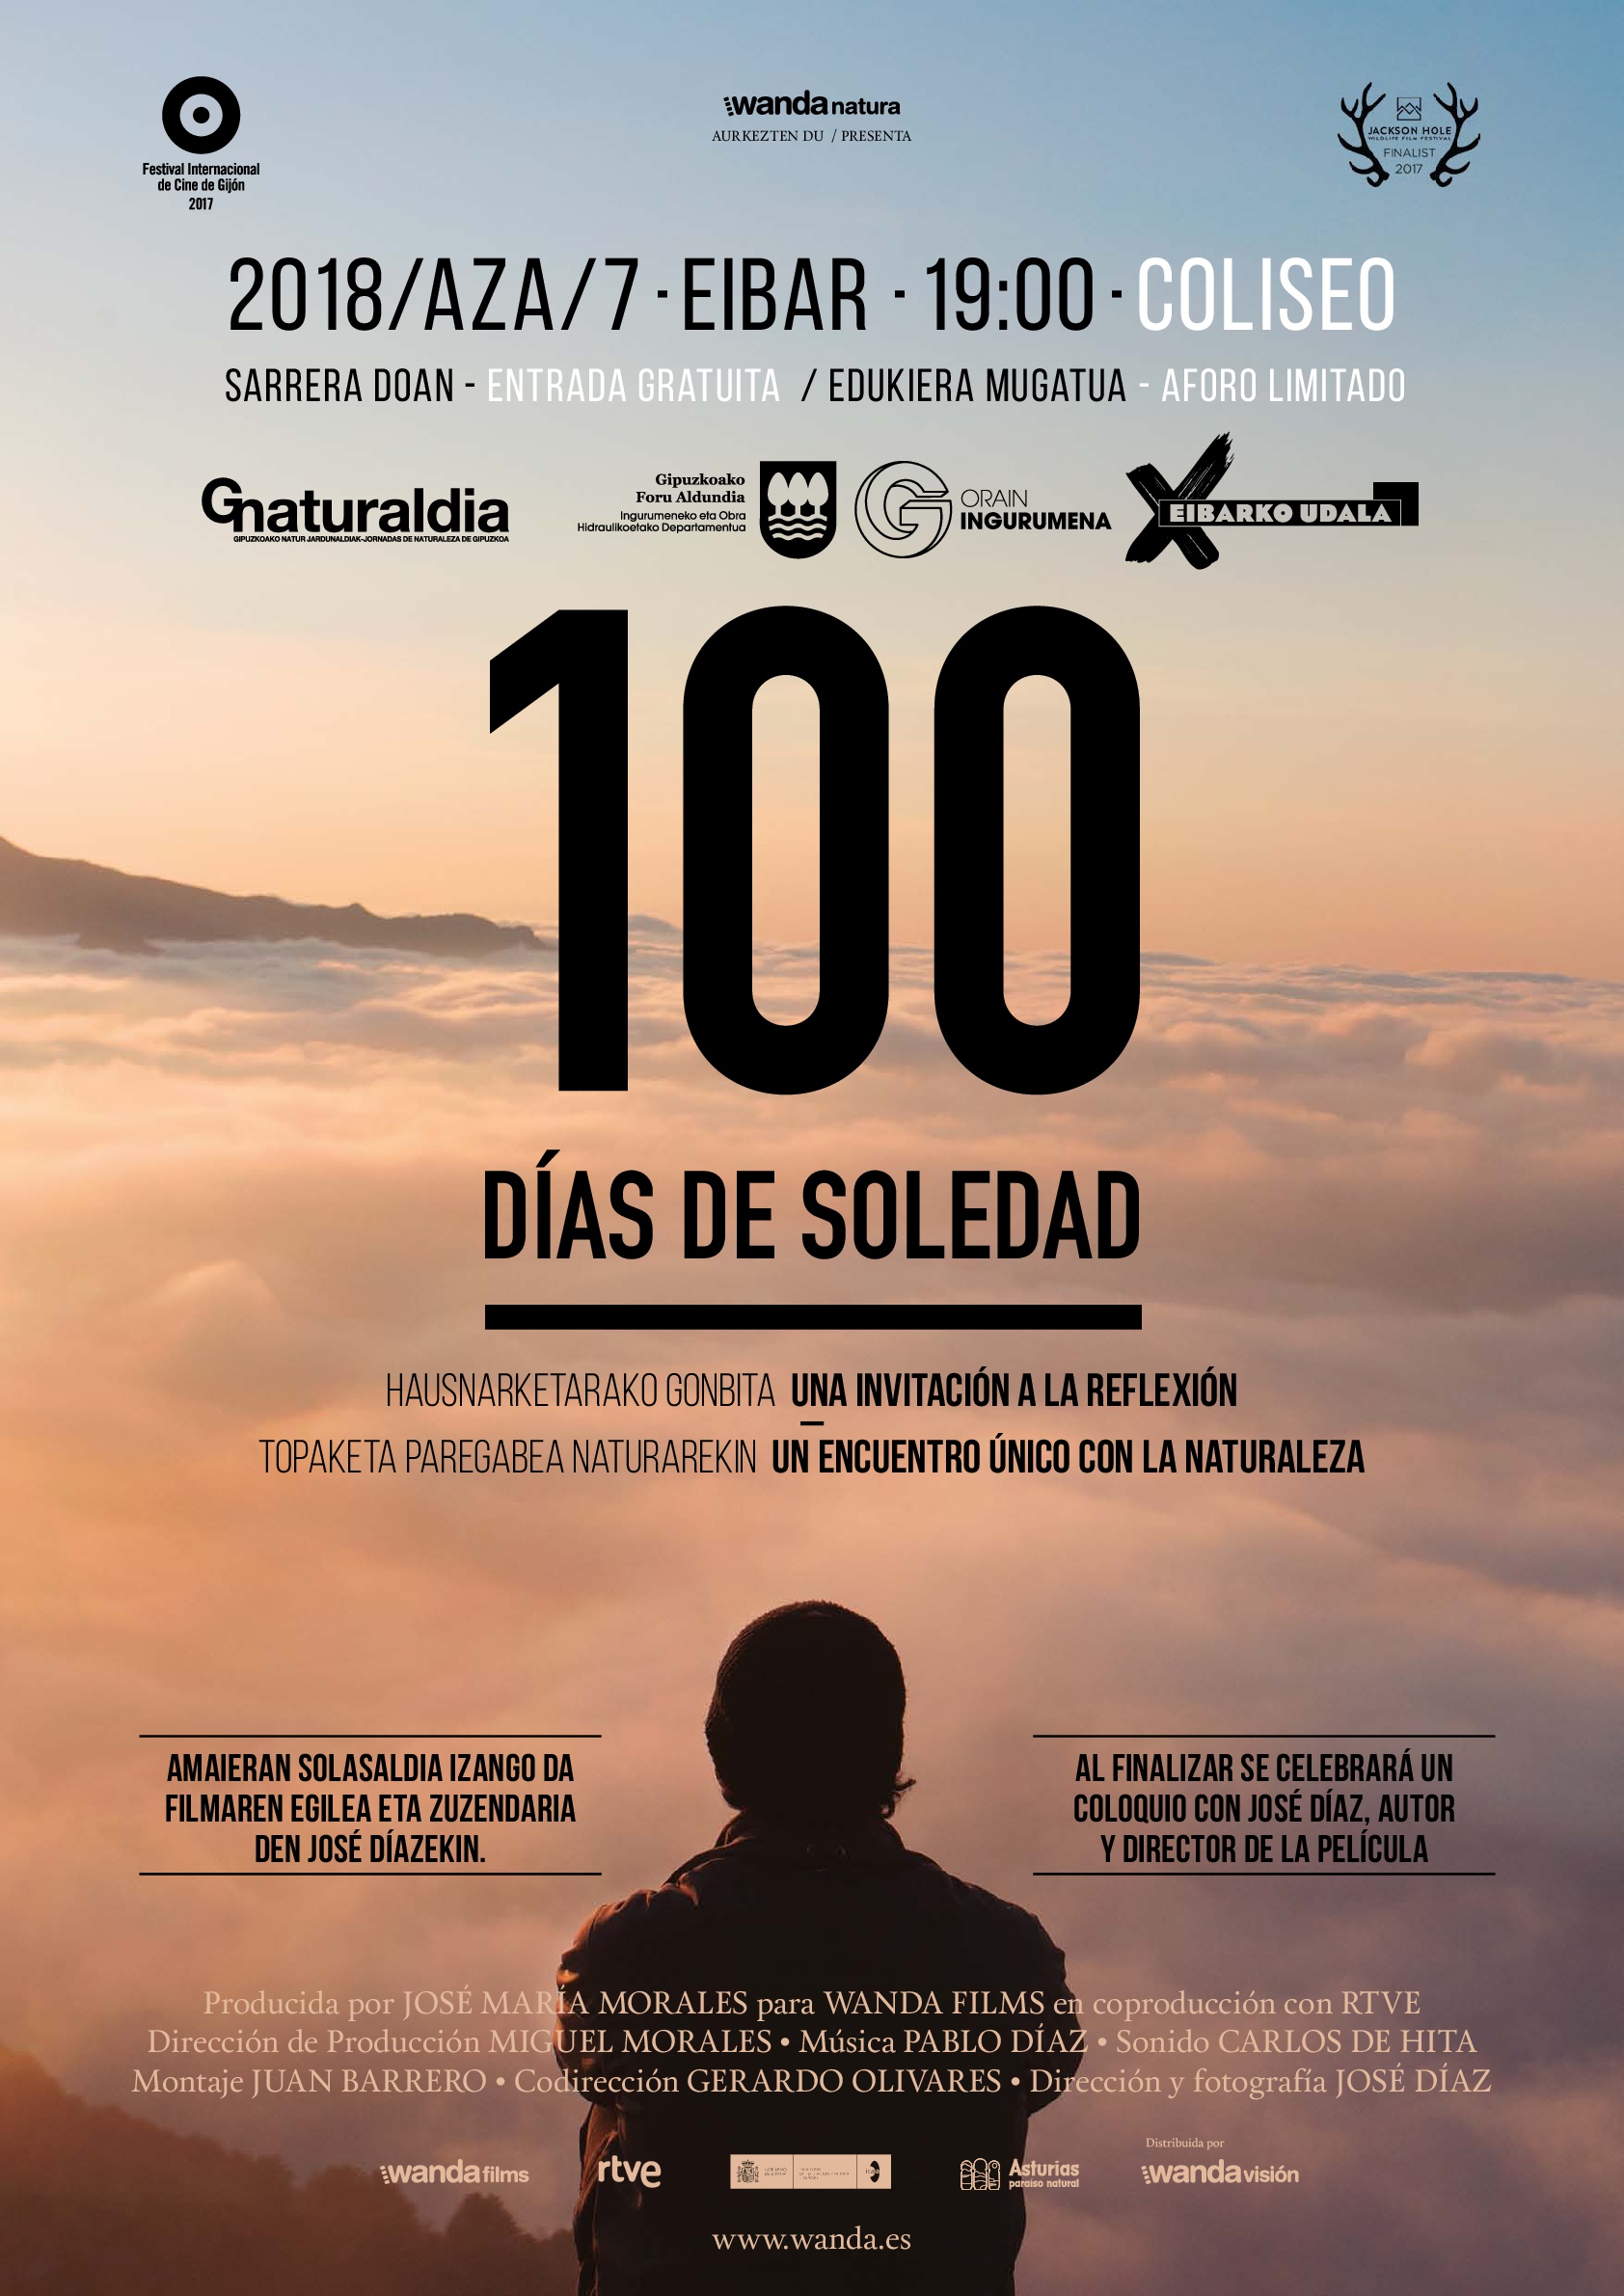 Eibar volverá a ser sede de Gipuzkoa Naturaldia con la proyección de la película "100 días de soledad"